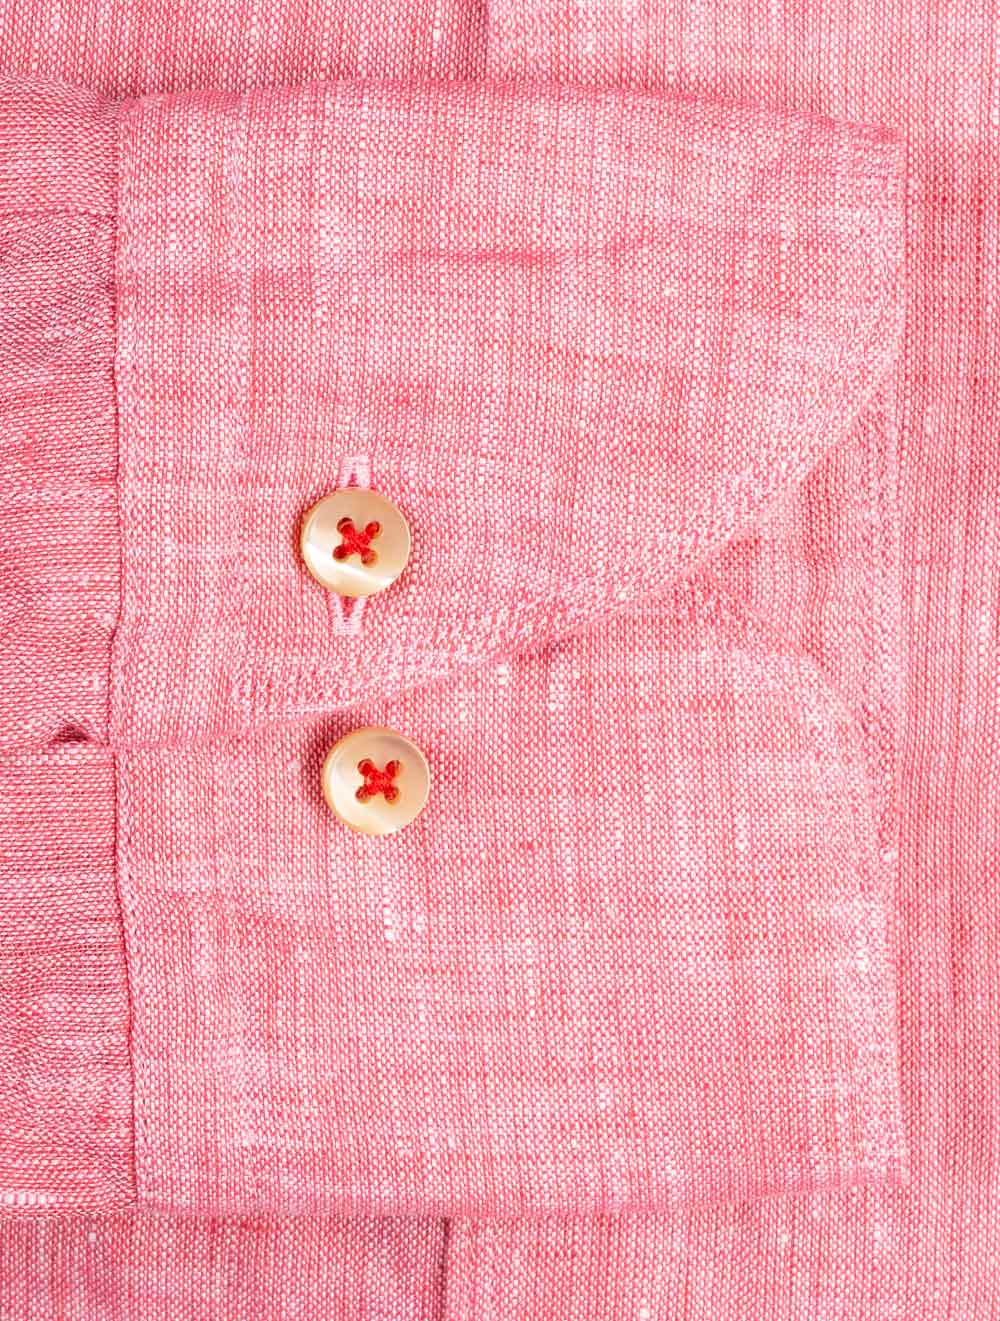 Stenstroms Fitted Linen Shirt Pink